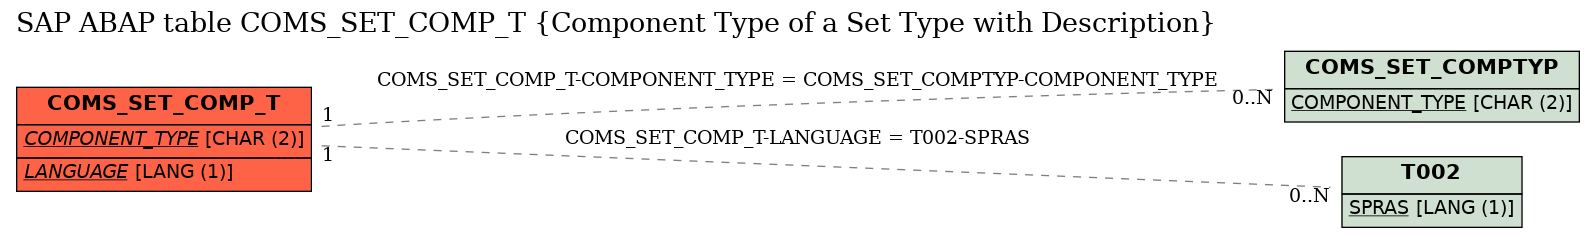 E-R Diagram for table COMS_SET_COMP_T (Component Type of a Set Type with Description)